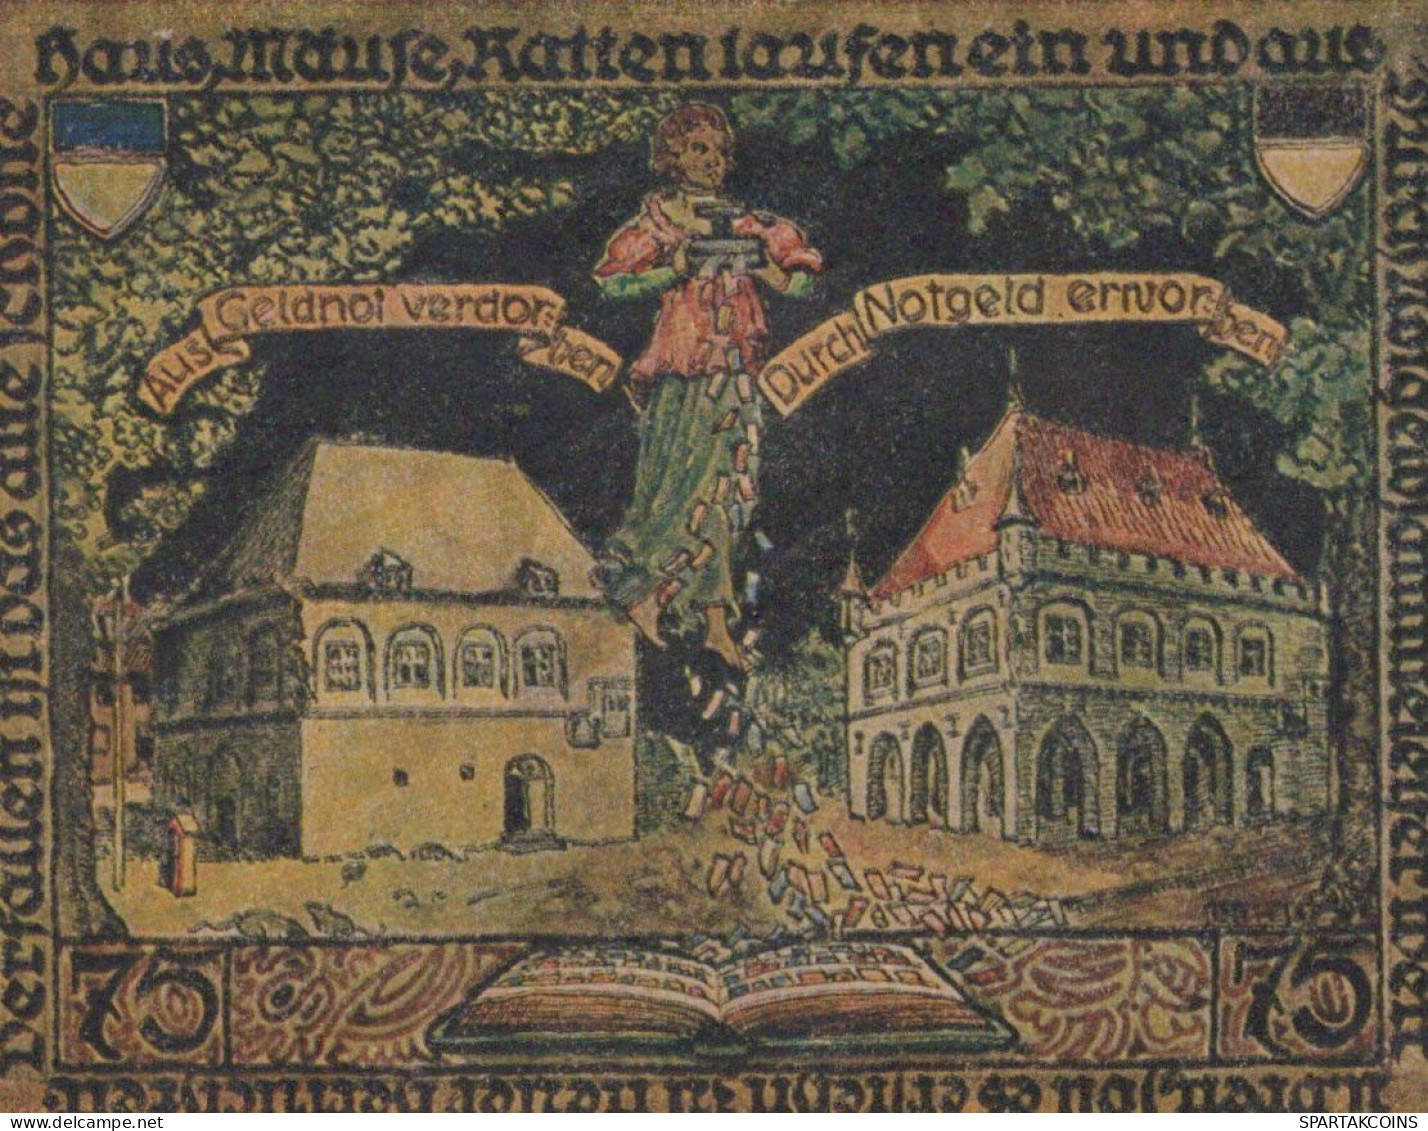 75 PFENNIG 1921 Stadt ERKELENZ Rhine UNC DEUTSCHLAND Notgeld Banknote #PB333 - [11] Emissions Locales